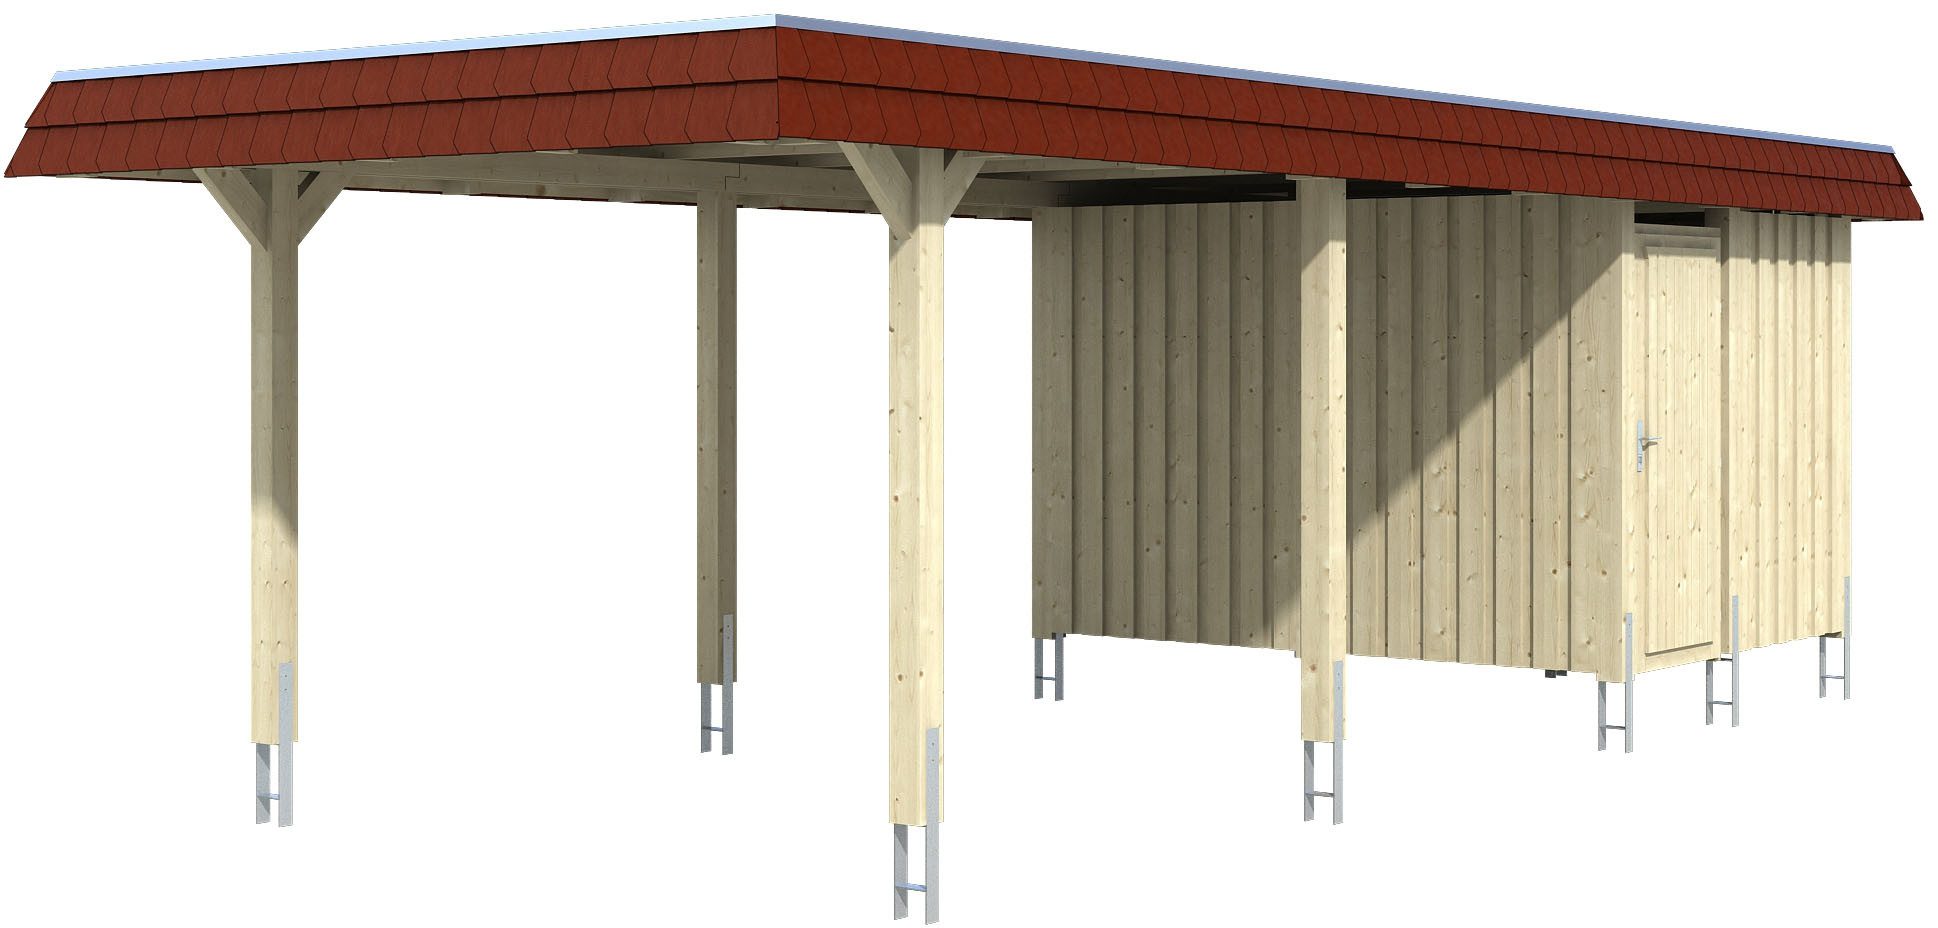 Skanholz Einzelcarport Wendland, BxT: 362x870 cm, 206 cm Einfahrtshöhe, mit Abstellraum mit Aluminiumdach, rote Blende